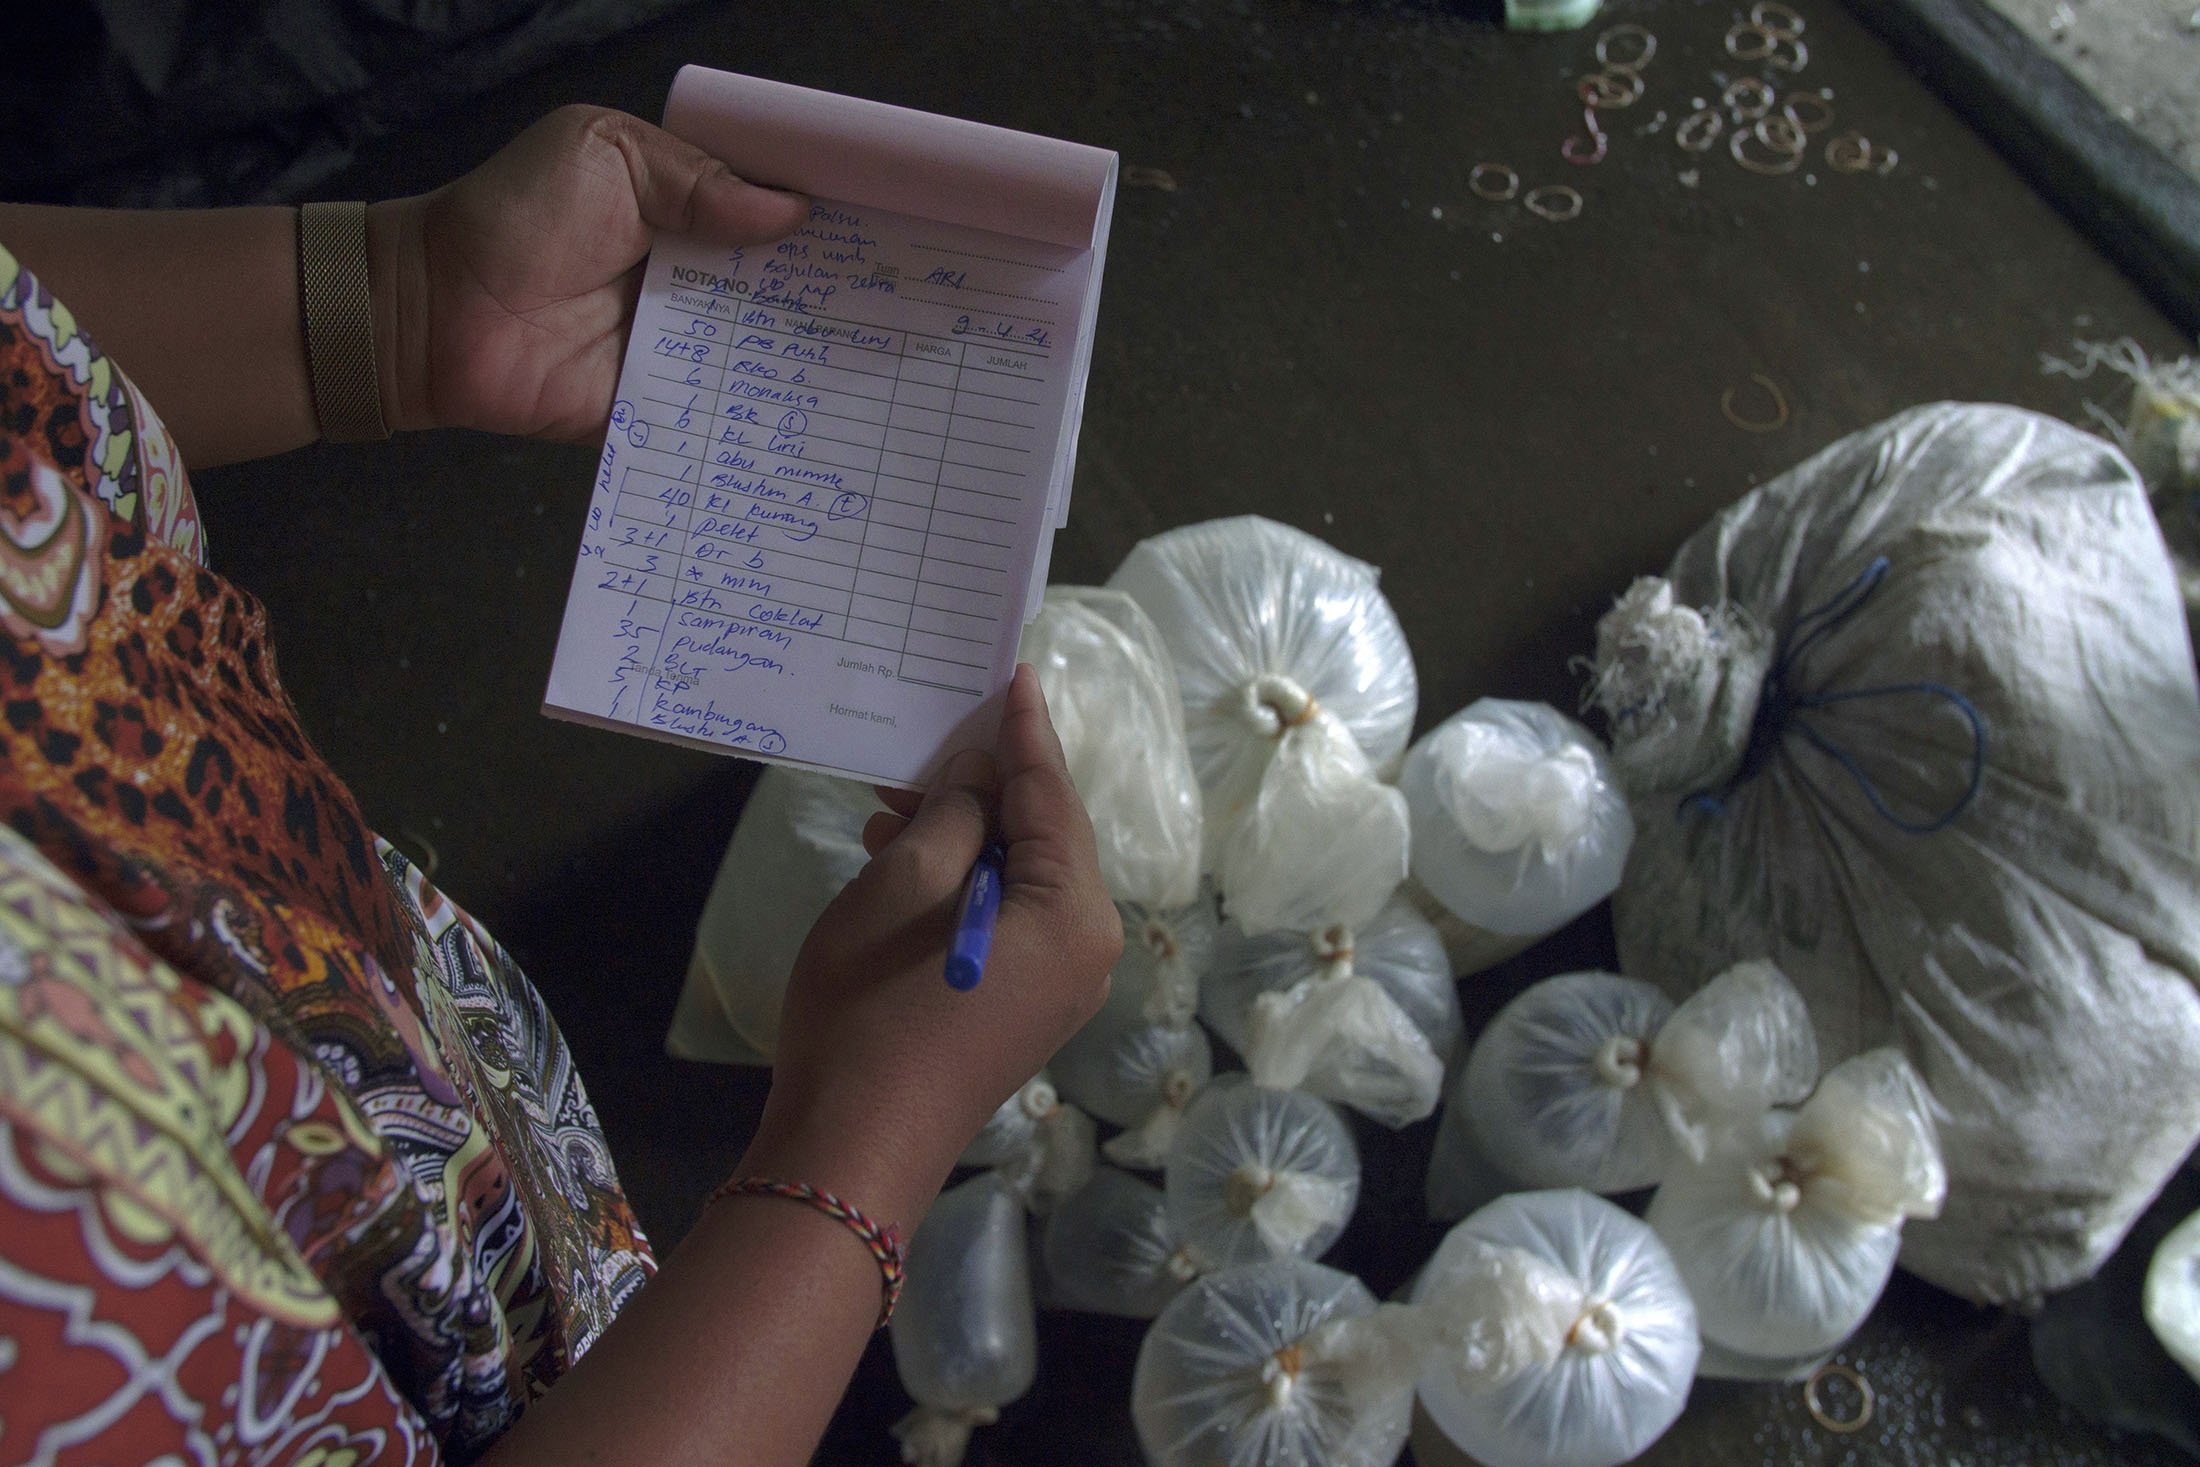 Seorang pekerja memeriksa daftar sortir dan pesanan di area perantara di Les, Bali, Indonesia, 10 April 2021. (AP Photo)